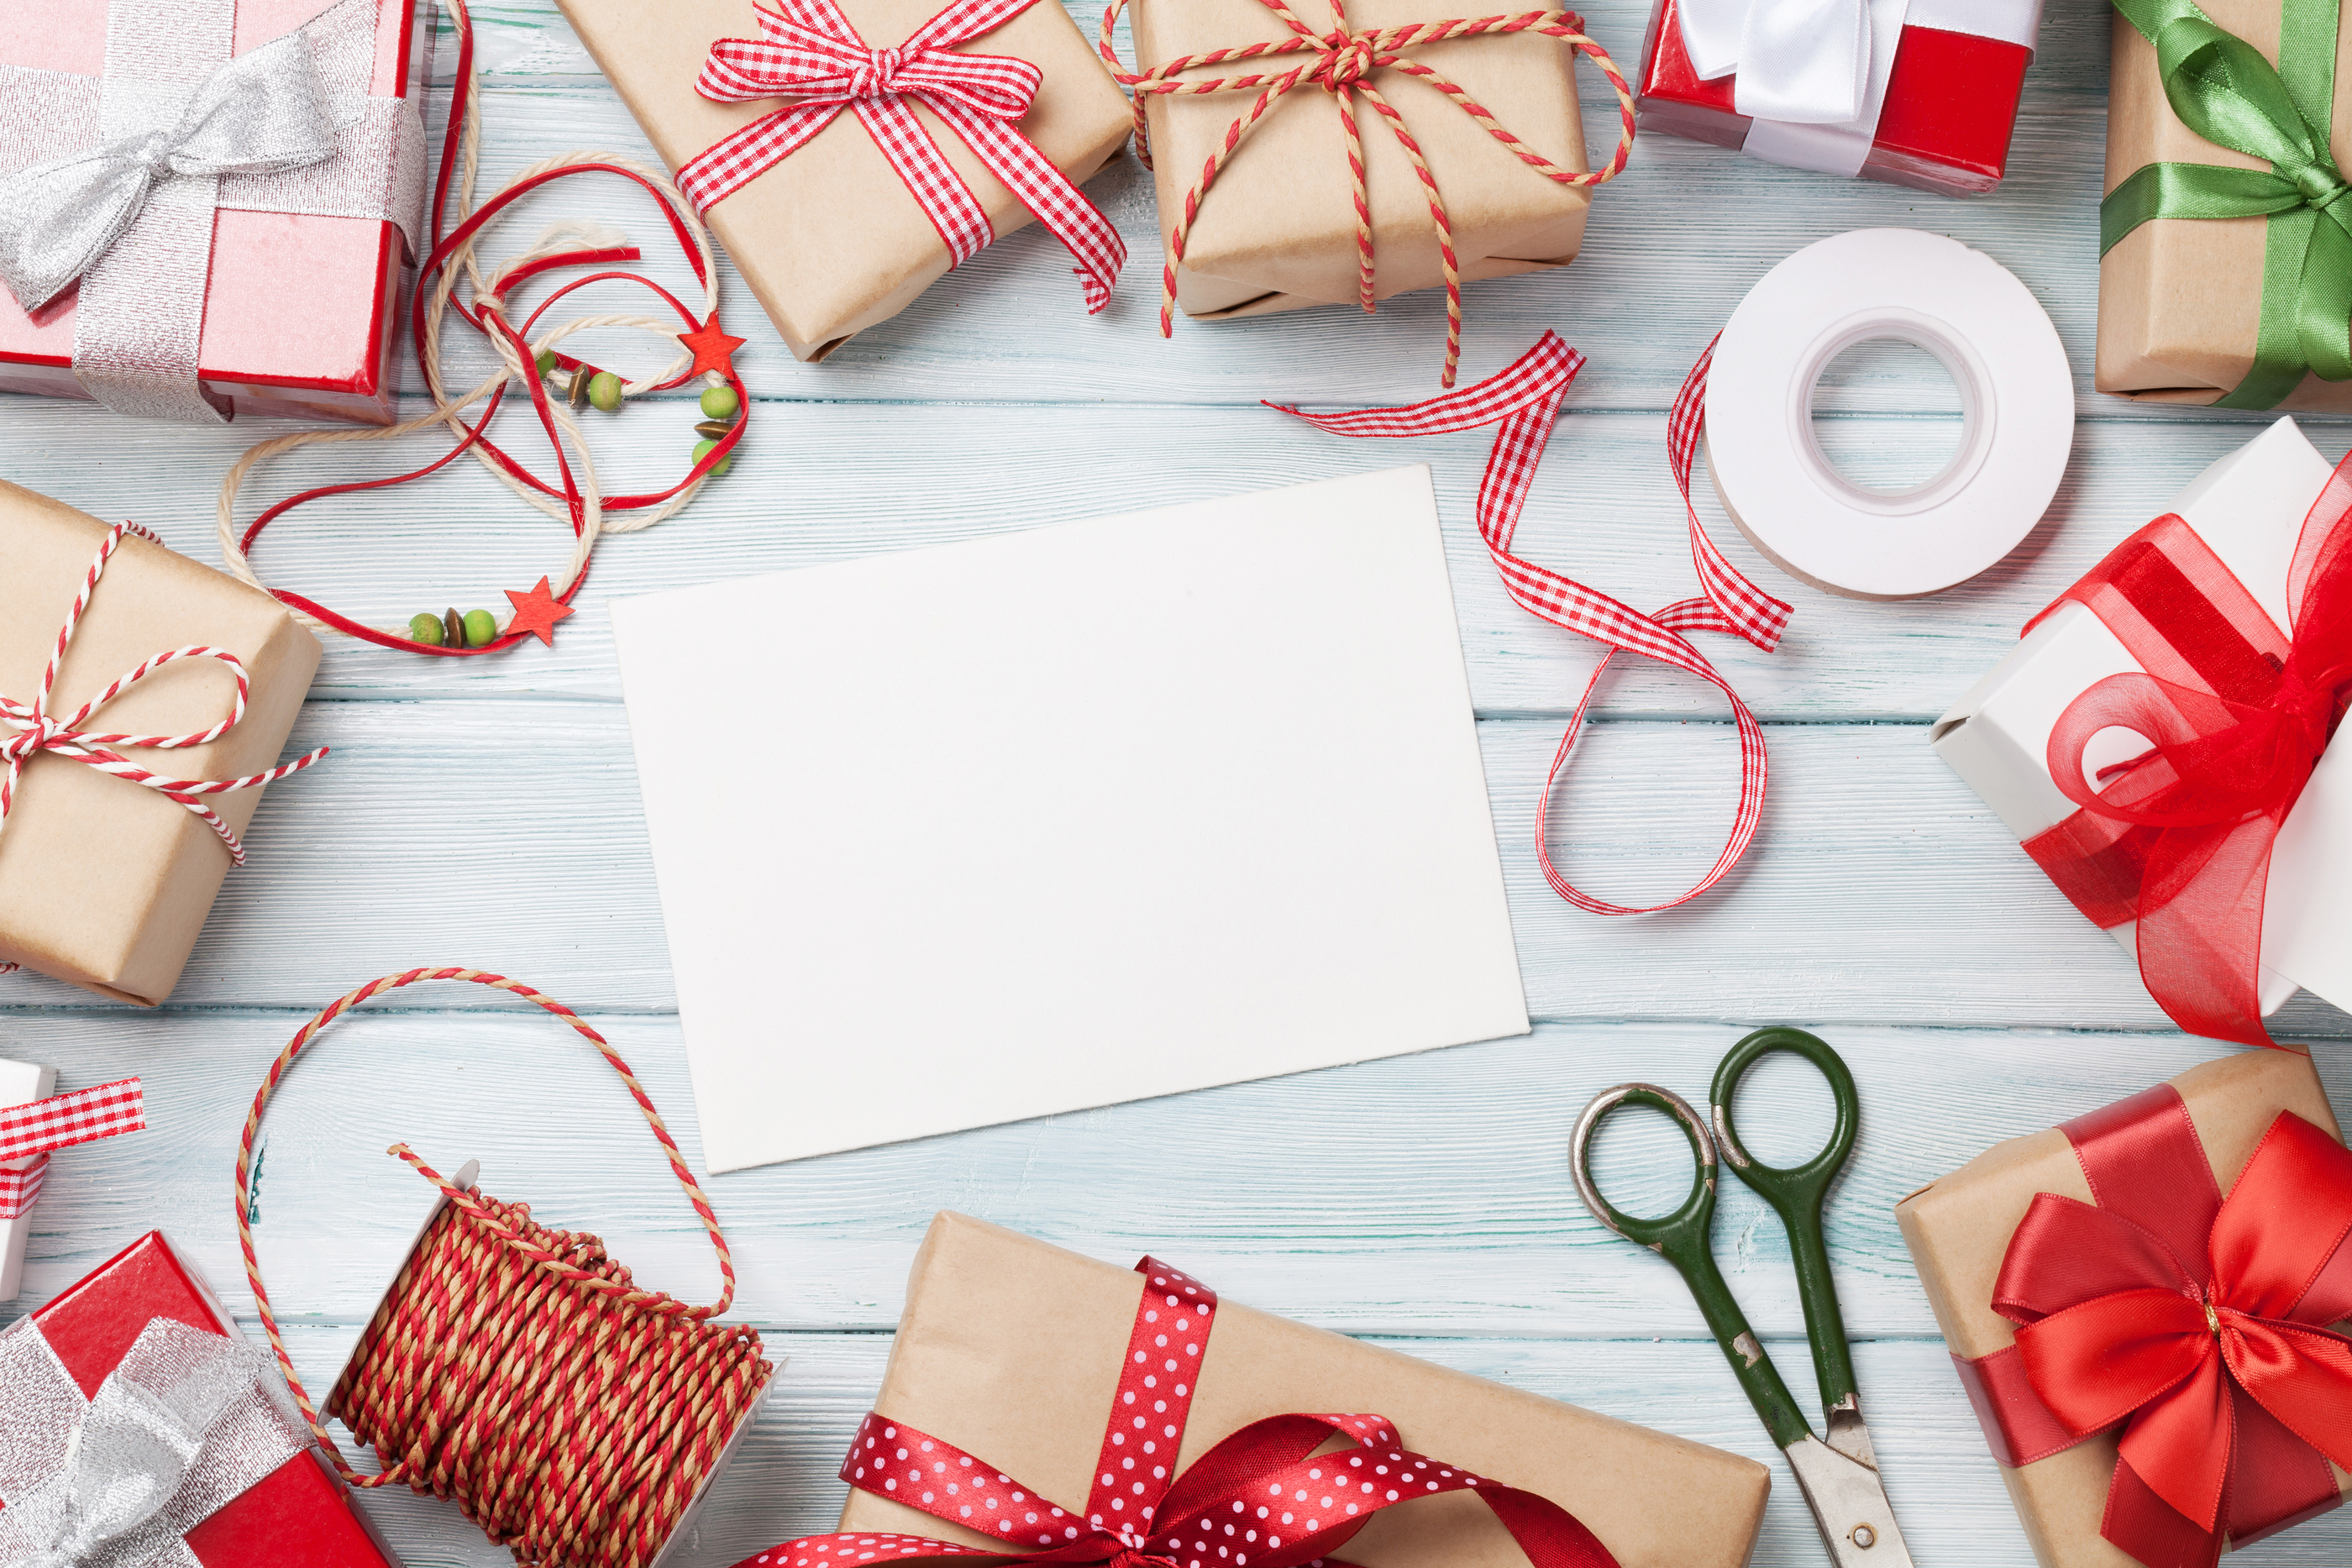 bigstock-Christmas-greeting-card-and-gi-153263948